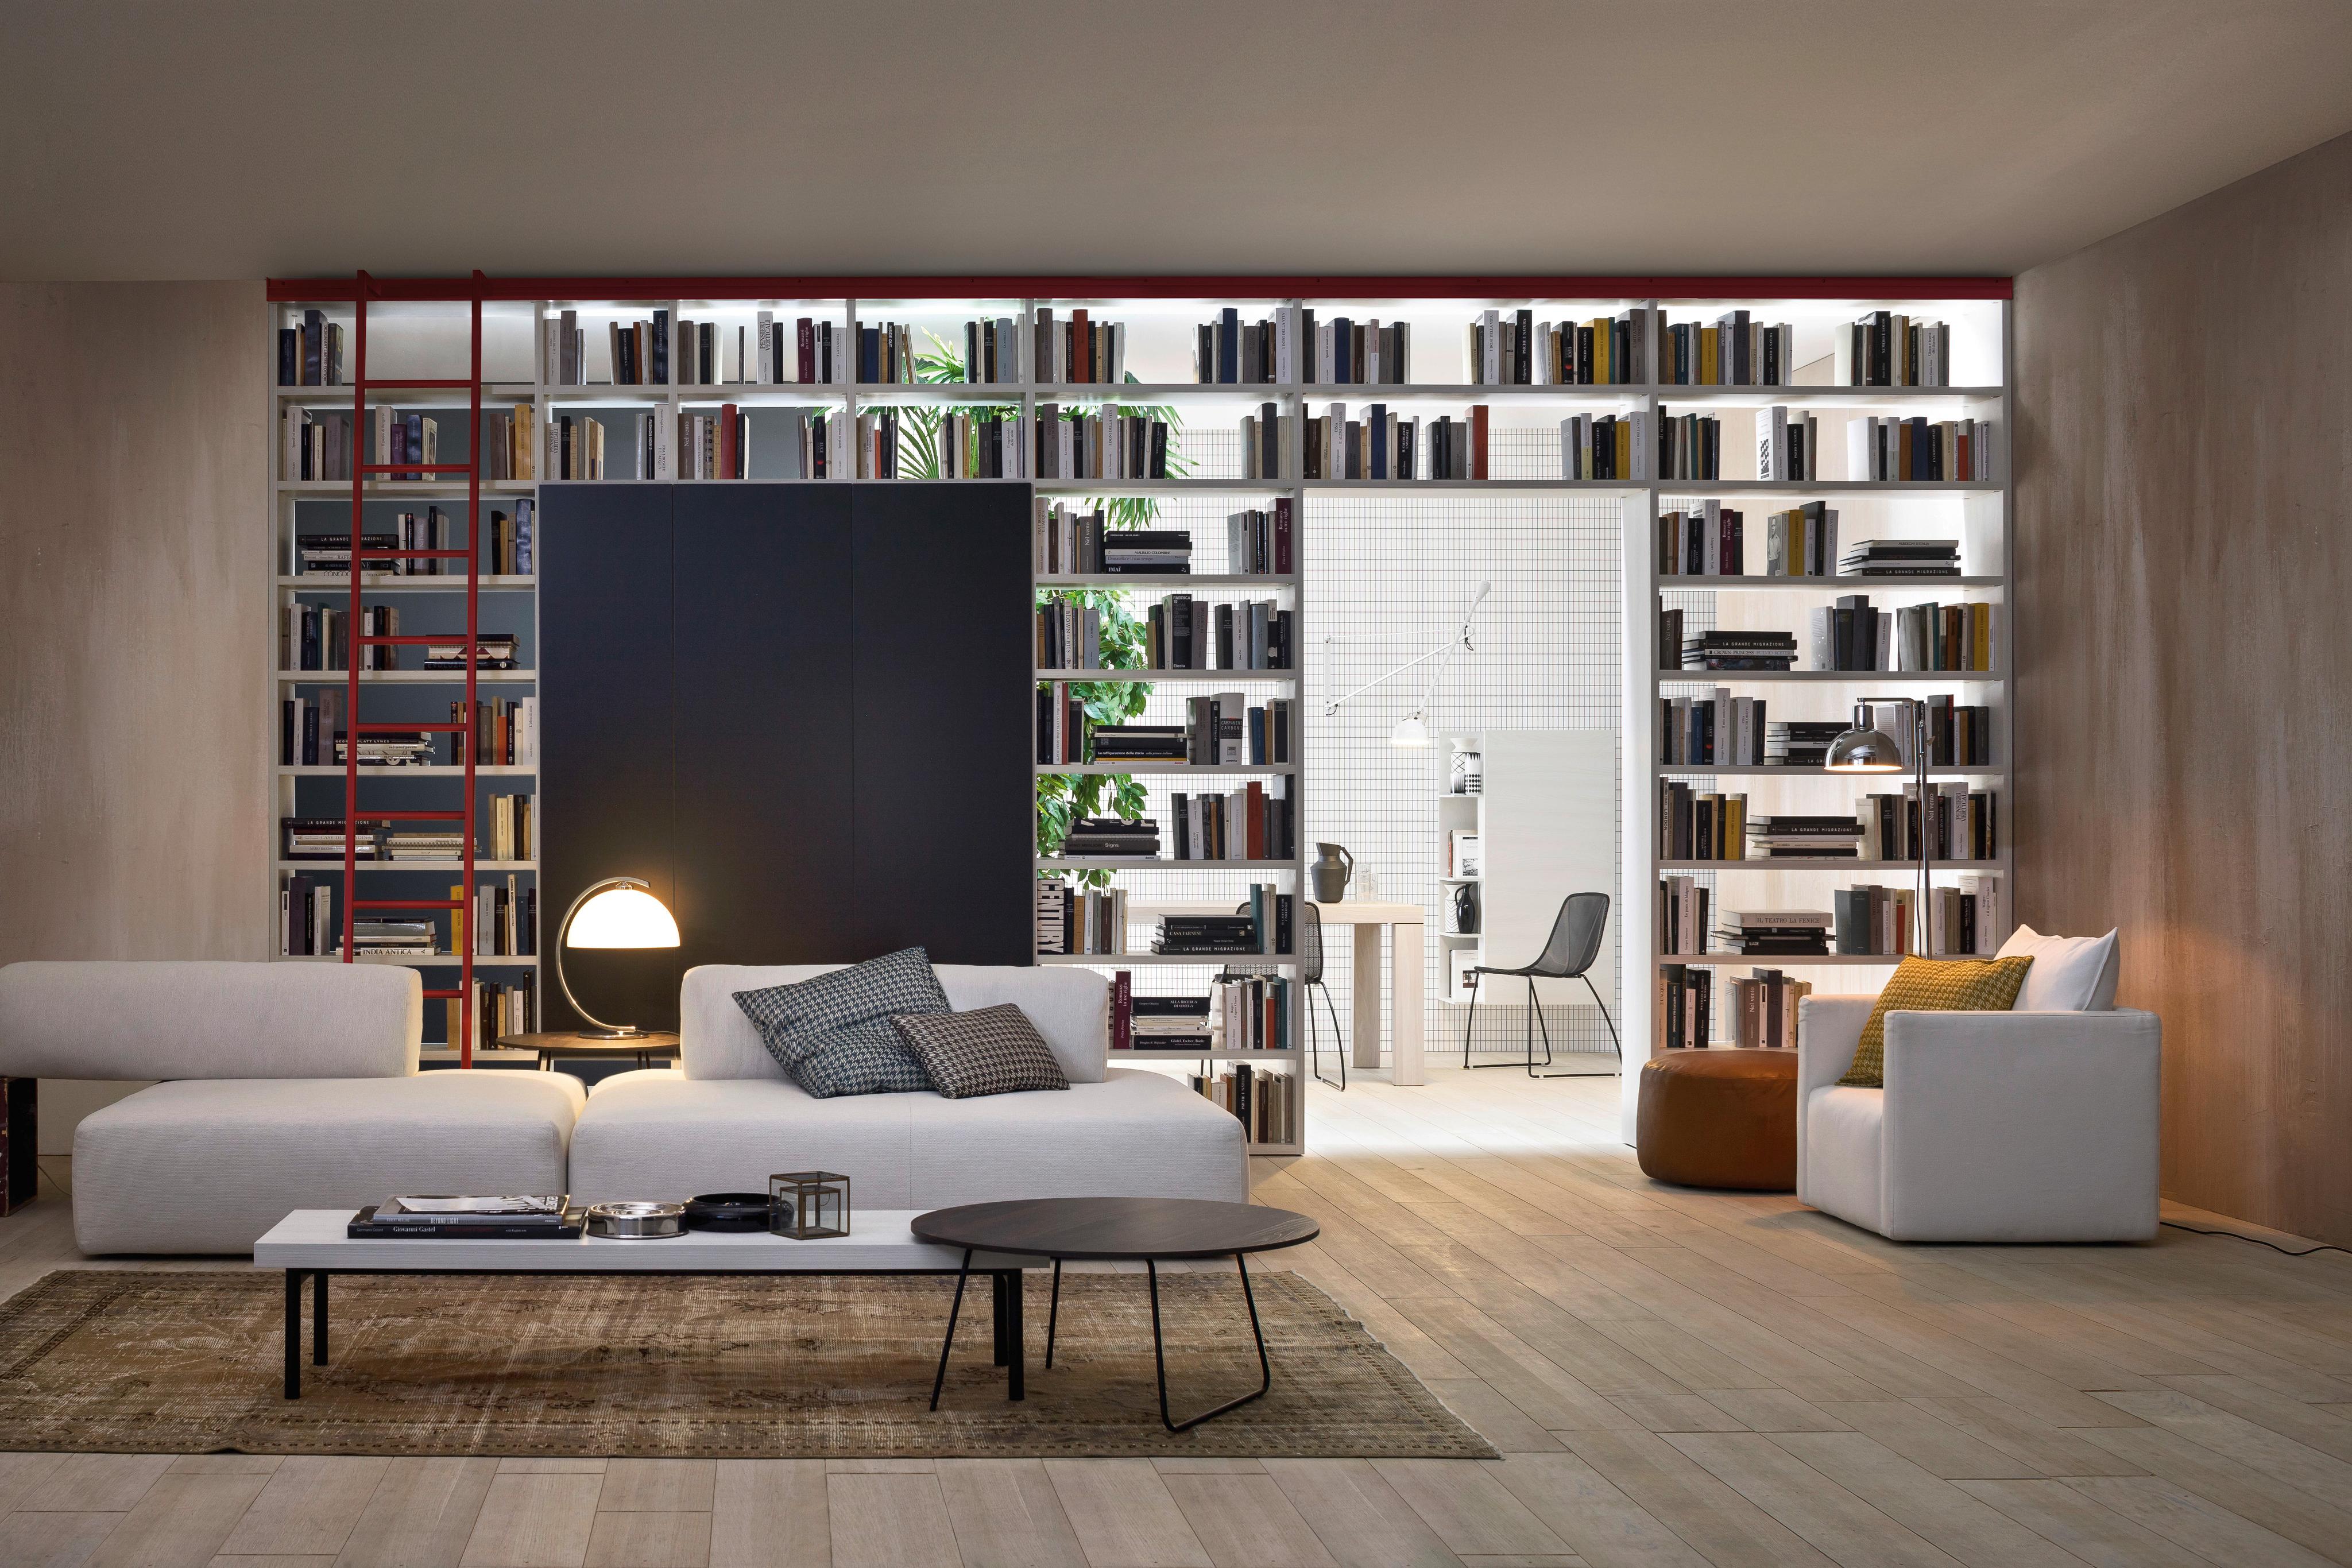 Design Bücherregal mit Leiter als Raumteiler #bücherregal #wohnzimmer #raumteiler ©Livarea.de / Novamobili